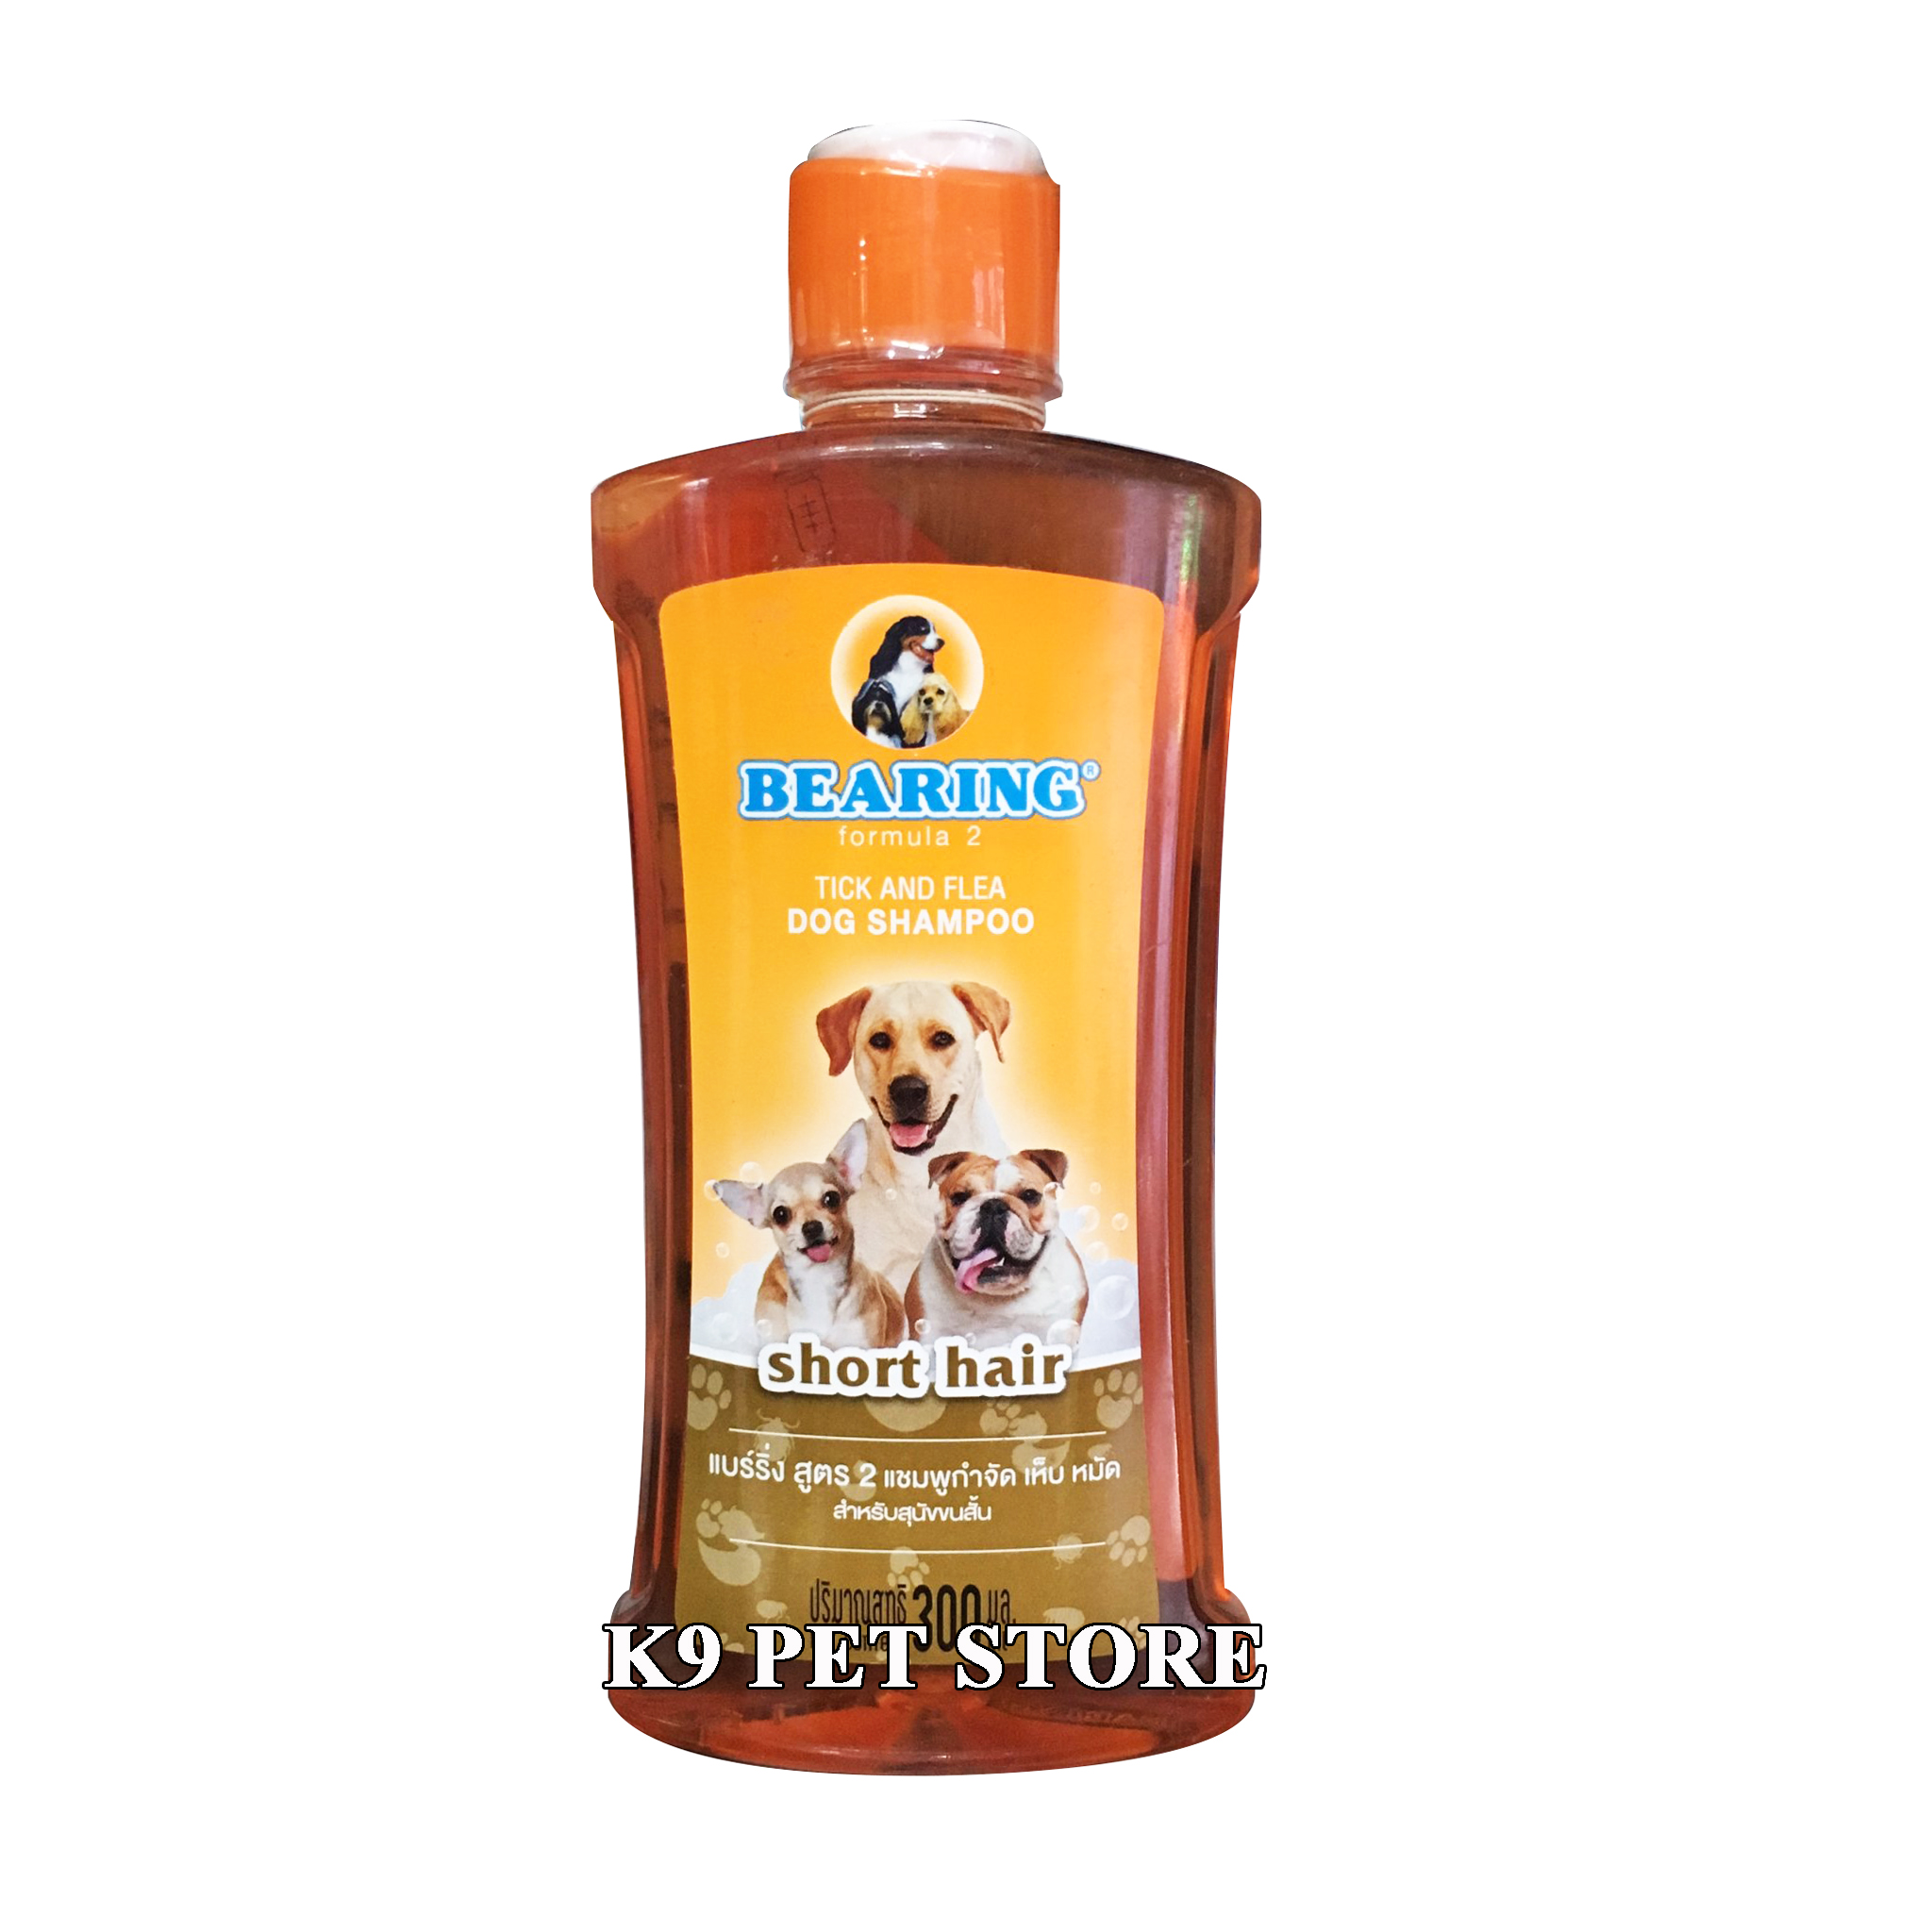 Sữa tắm trị ve Bearing Tick & Flea Dog Shampoo cho chó lông ngắn 300ml